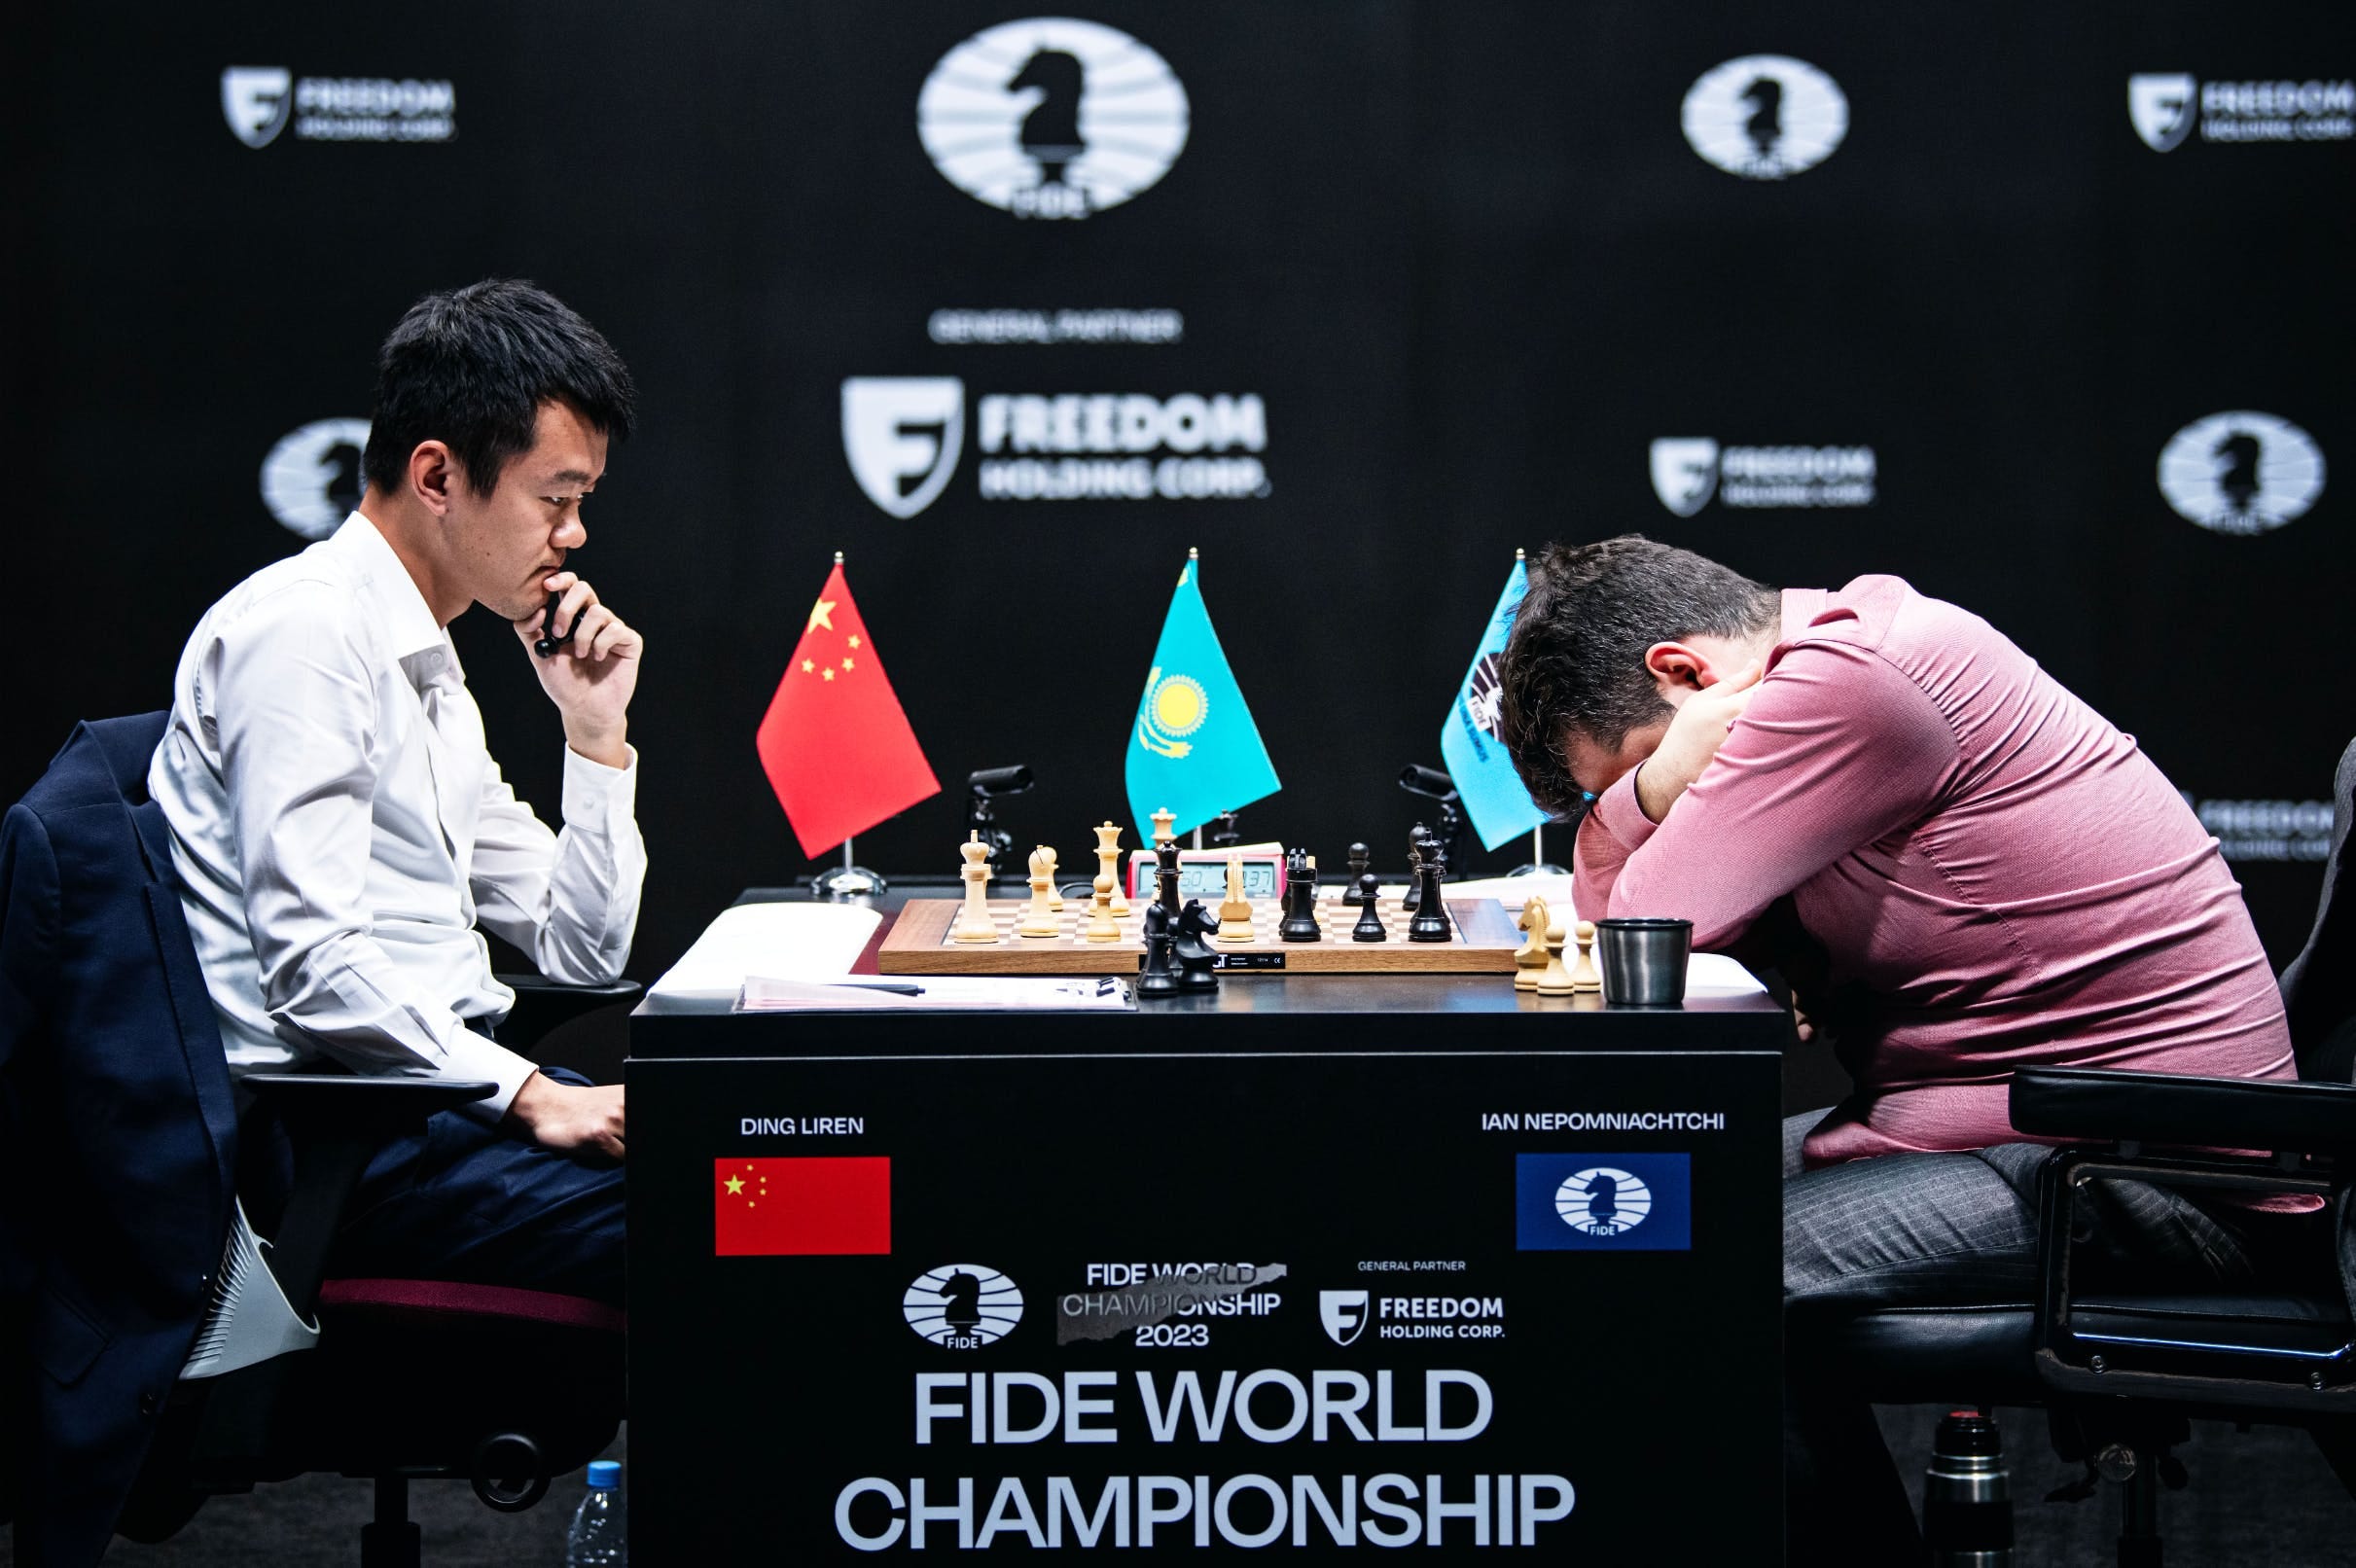 Bobby Fischer contra o mundo [DOCUMENTÁRIO COMPLETO E